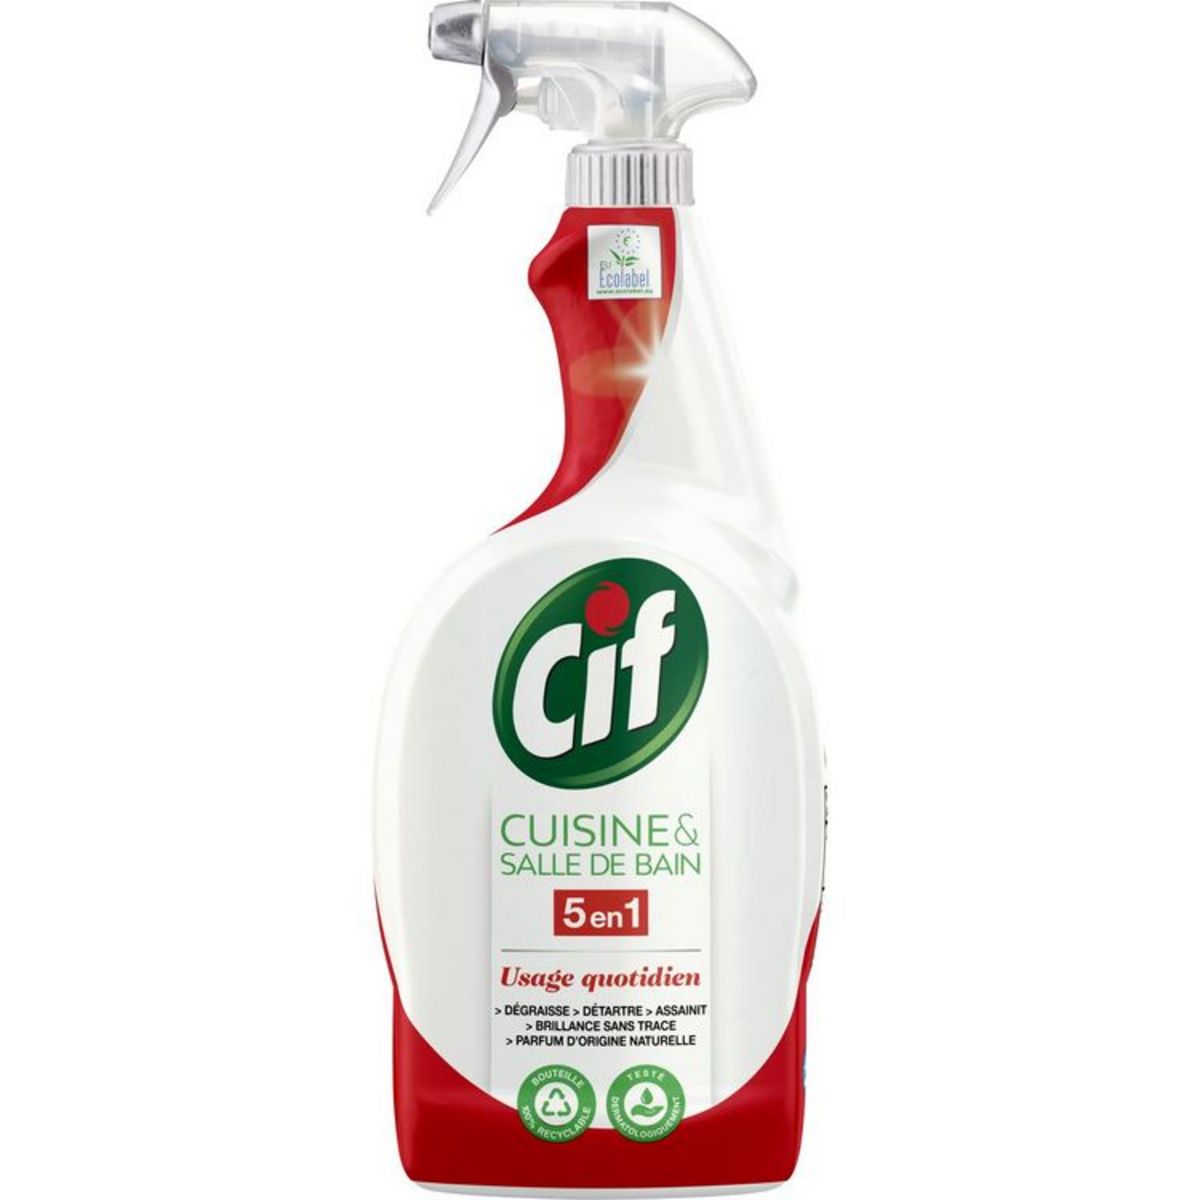 Cif Kitchen & bathroom spray cleaner 750ml